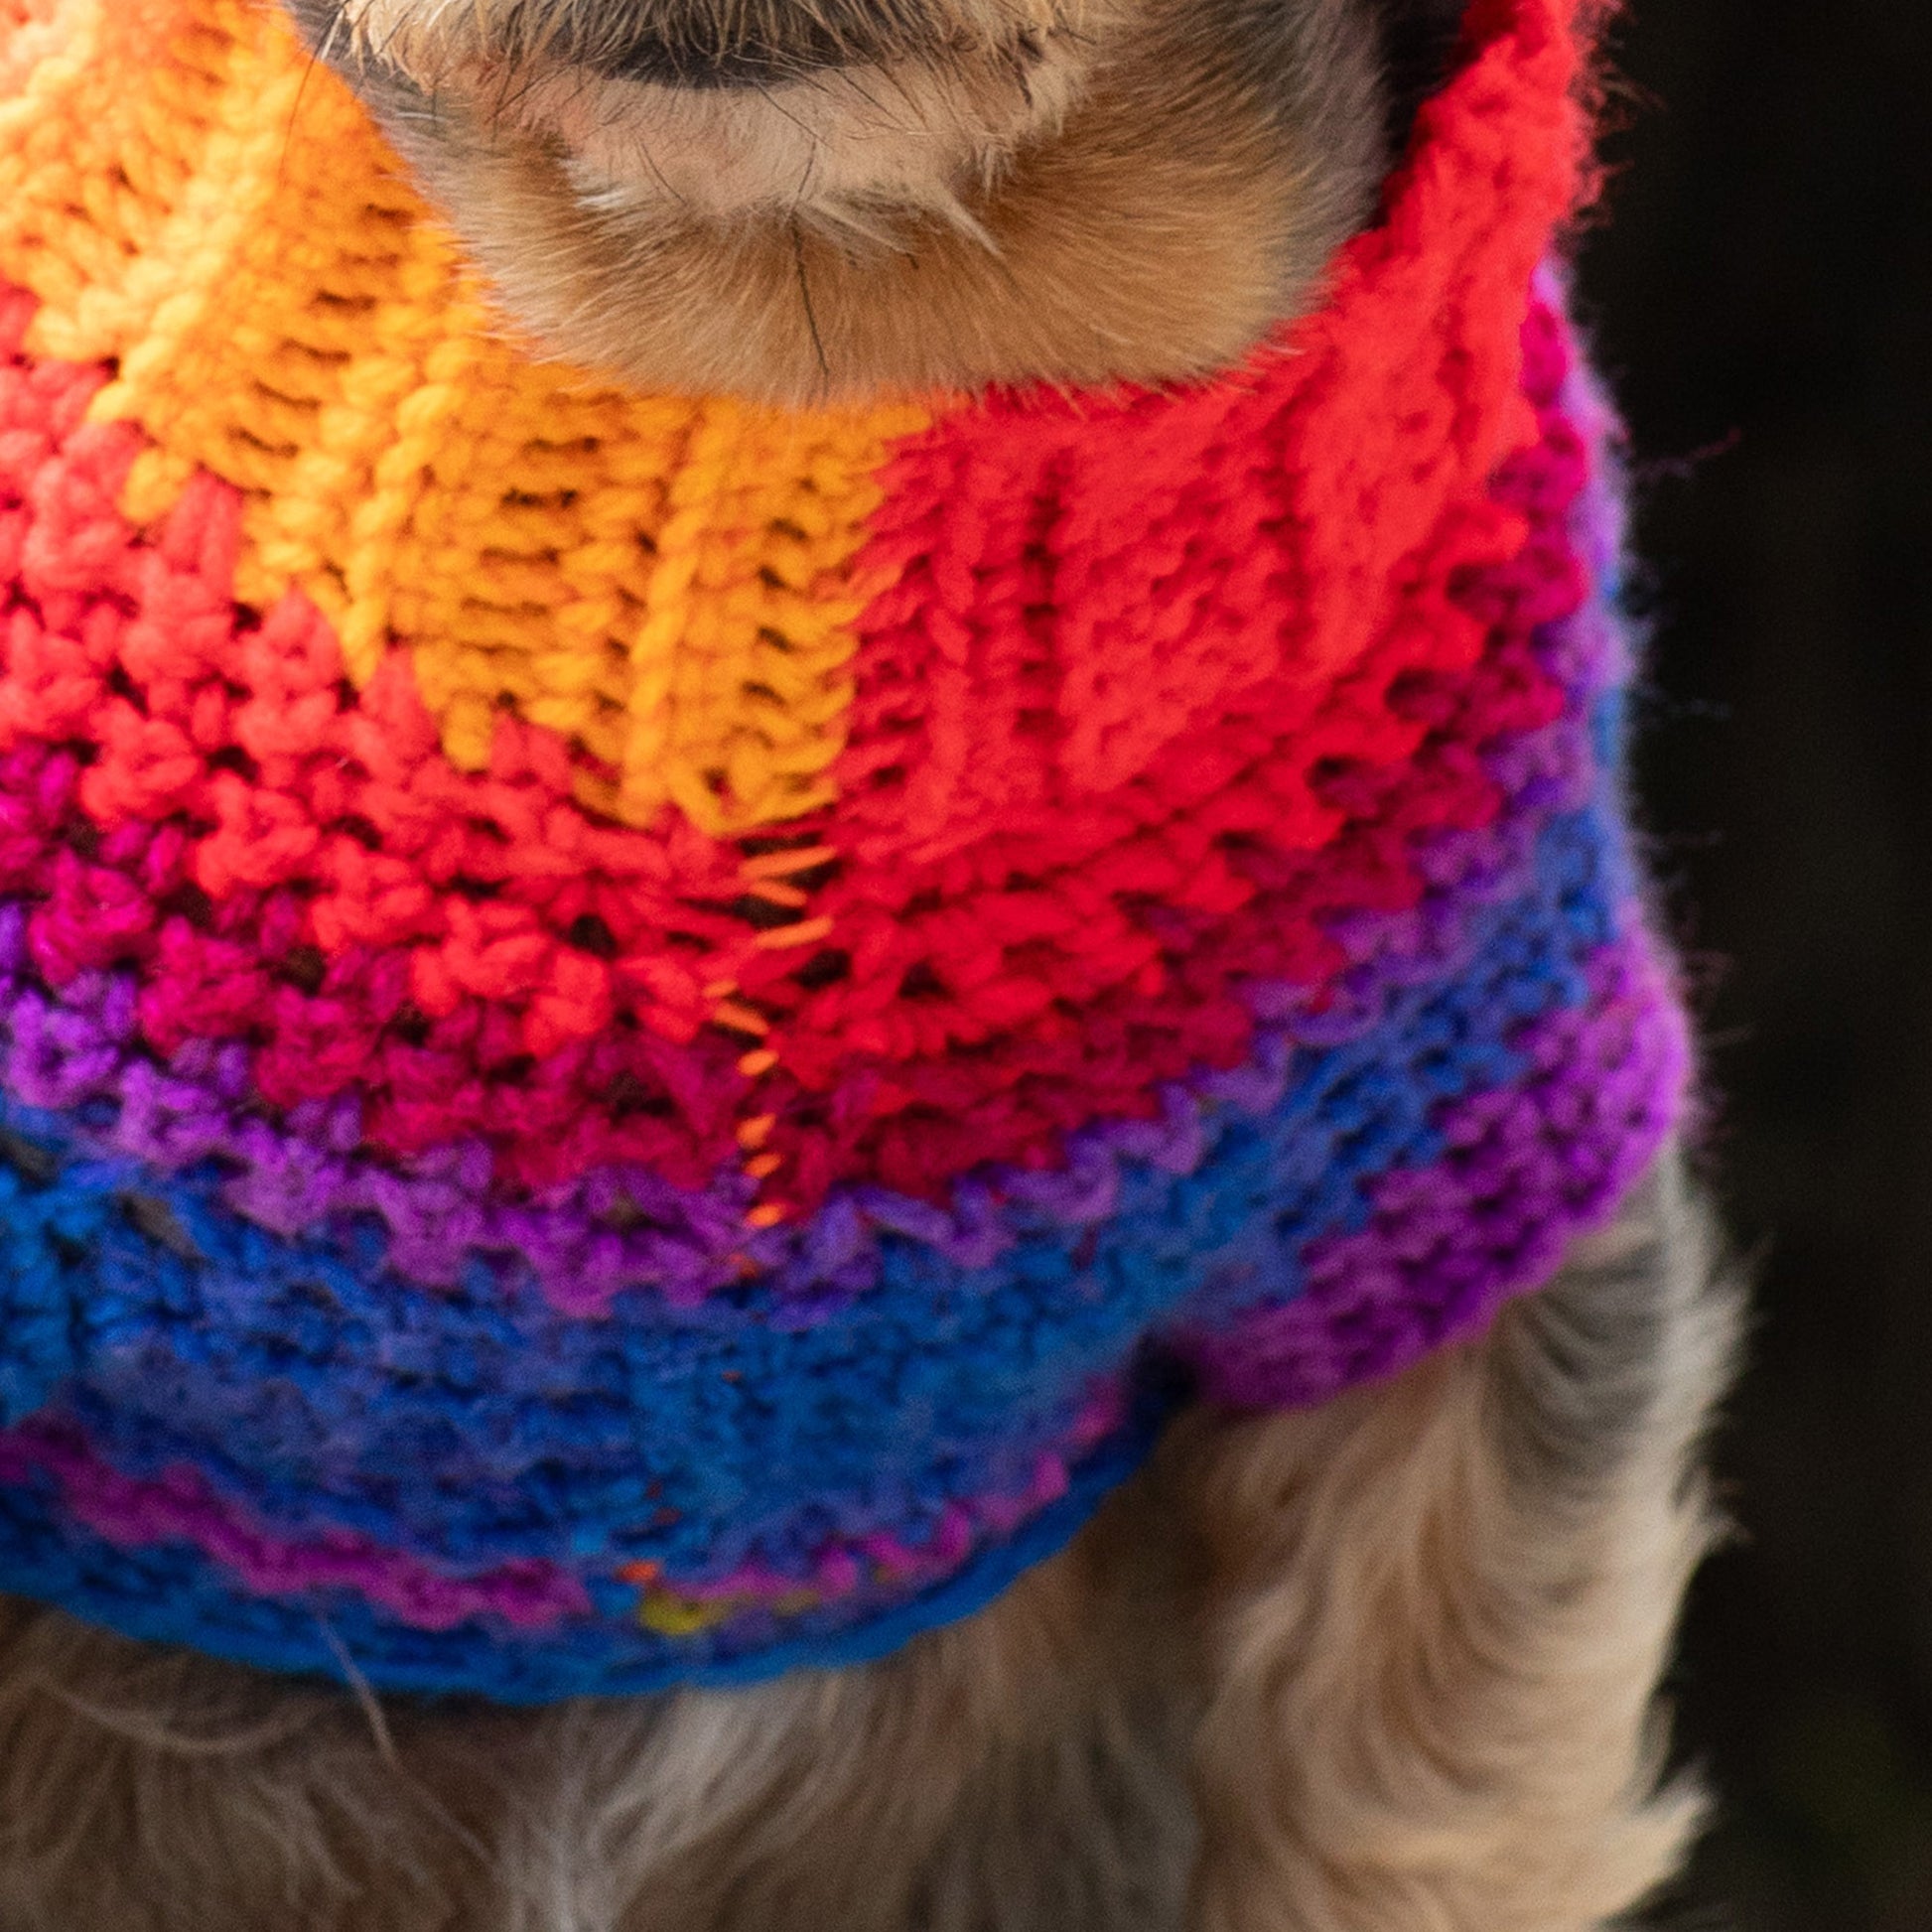 Free Red Heart Pup's Favorite Crochet Sweater Pattern